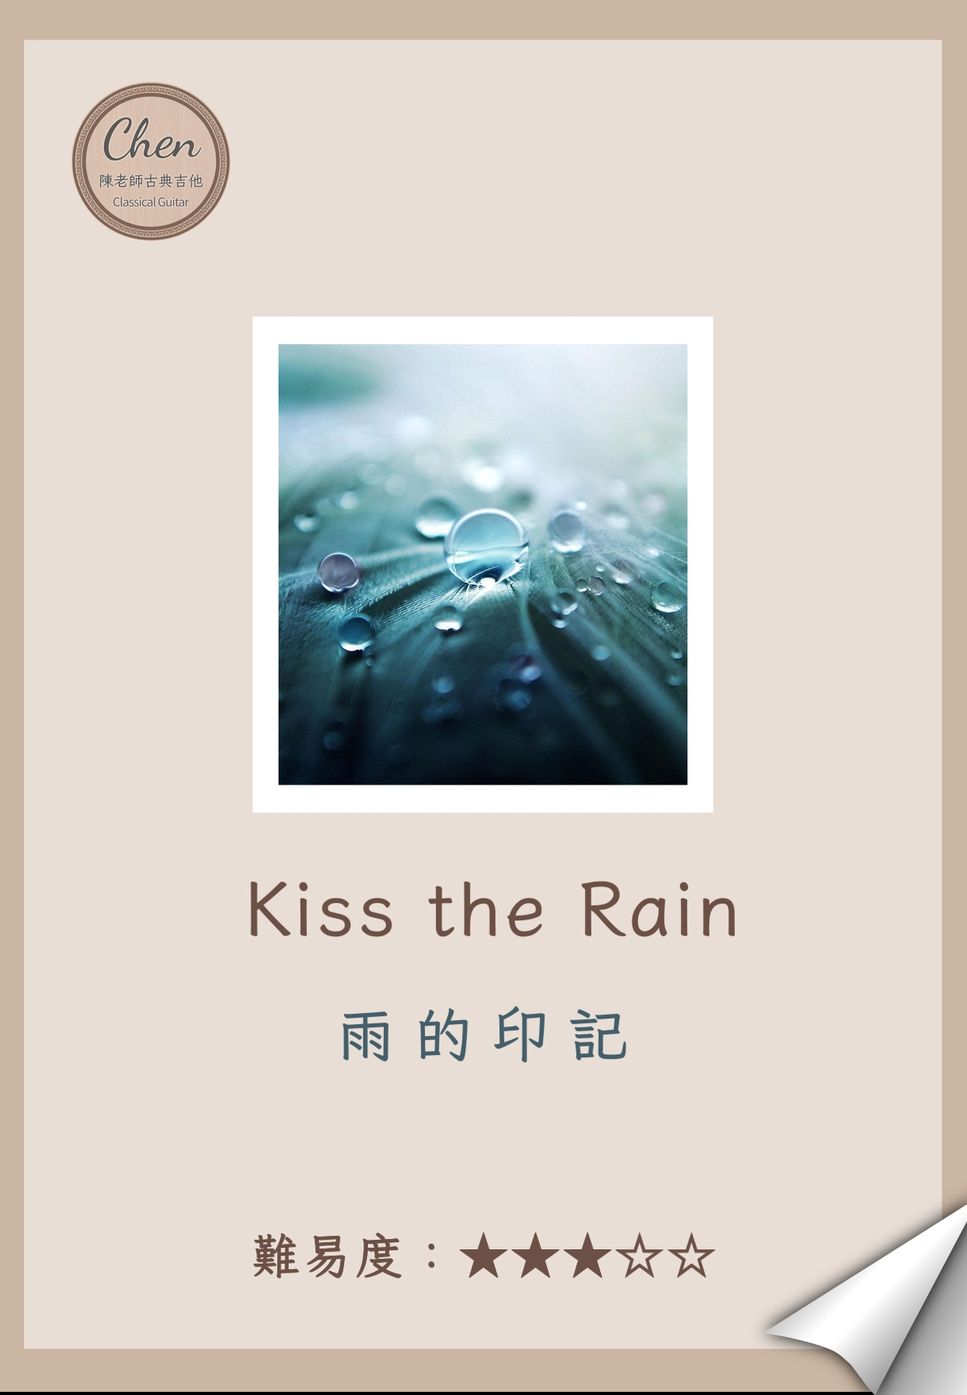 李閏珉 - Kiss the Rain - 雨的印記 by 陳老師古典吉他